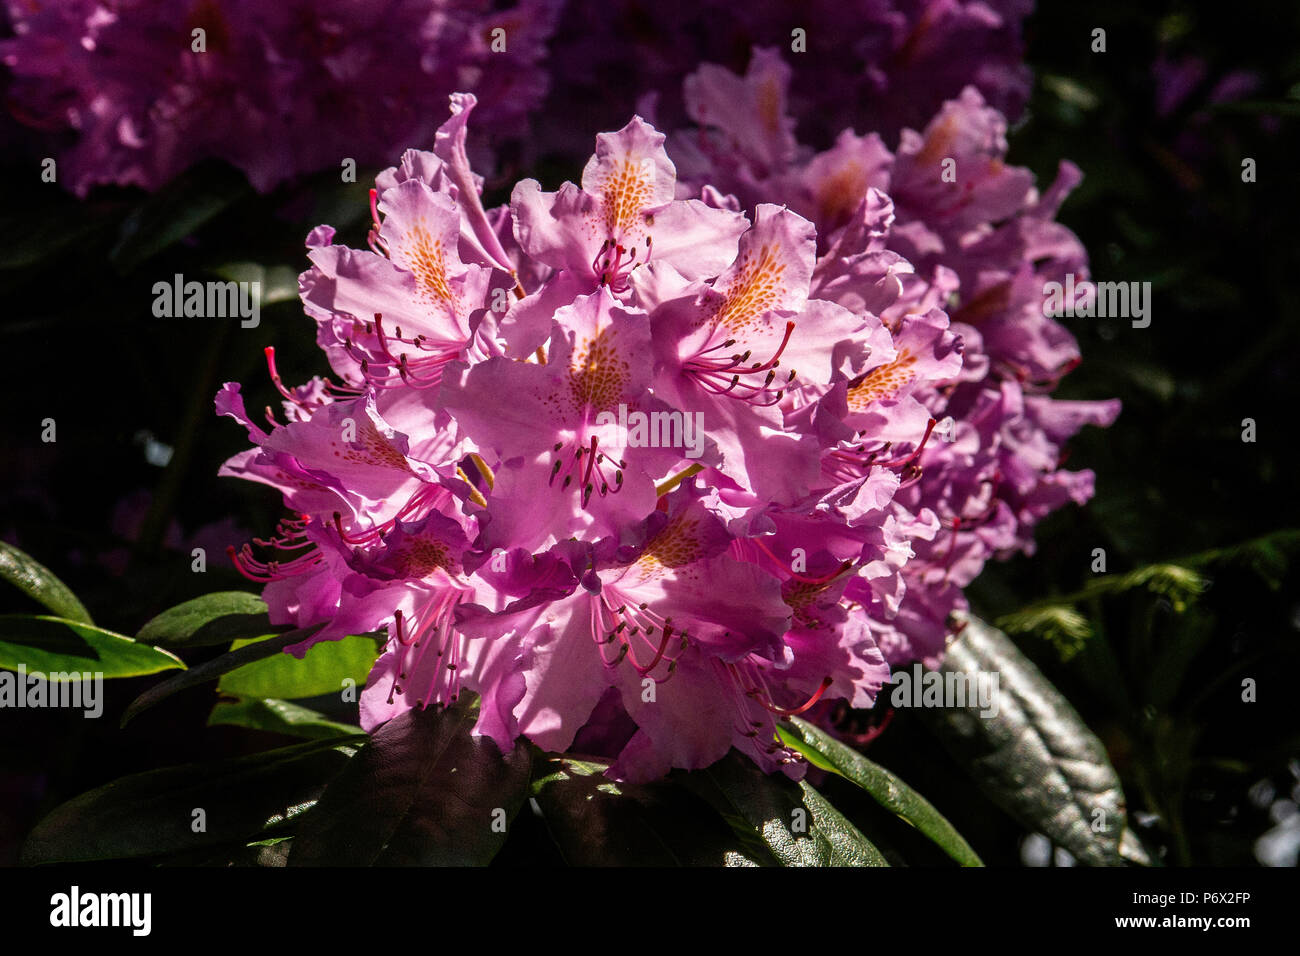 Rosa testa di rododendro mostra petali e stami Foto Stock